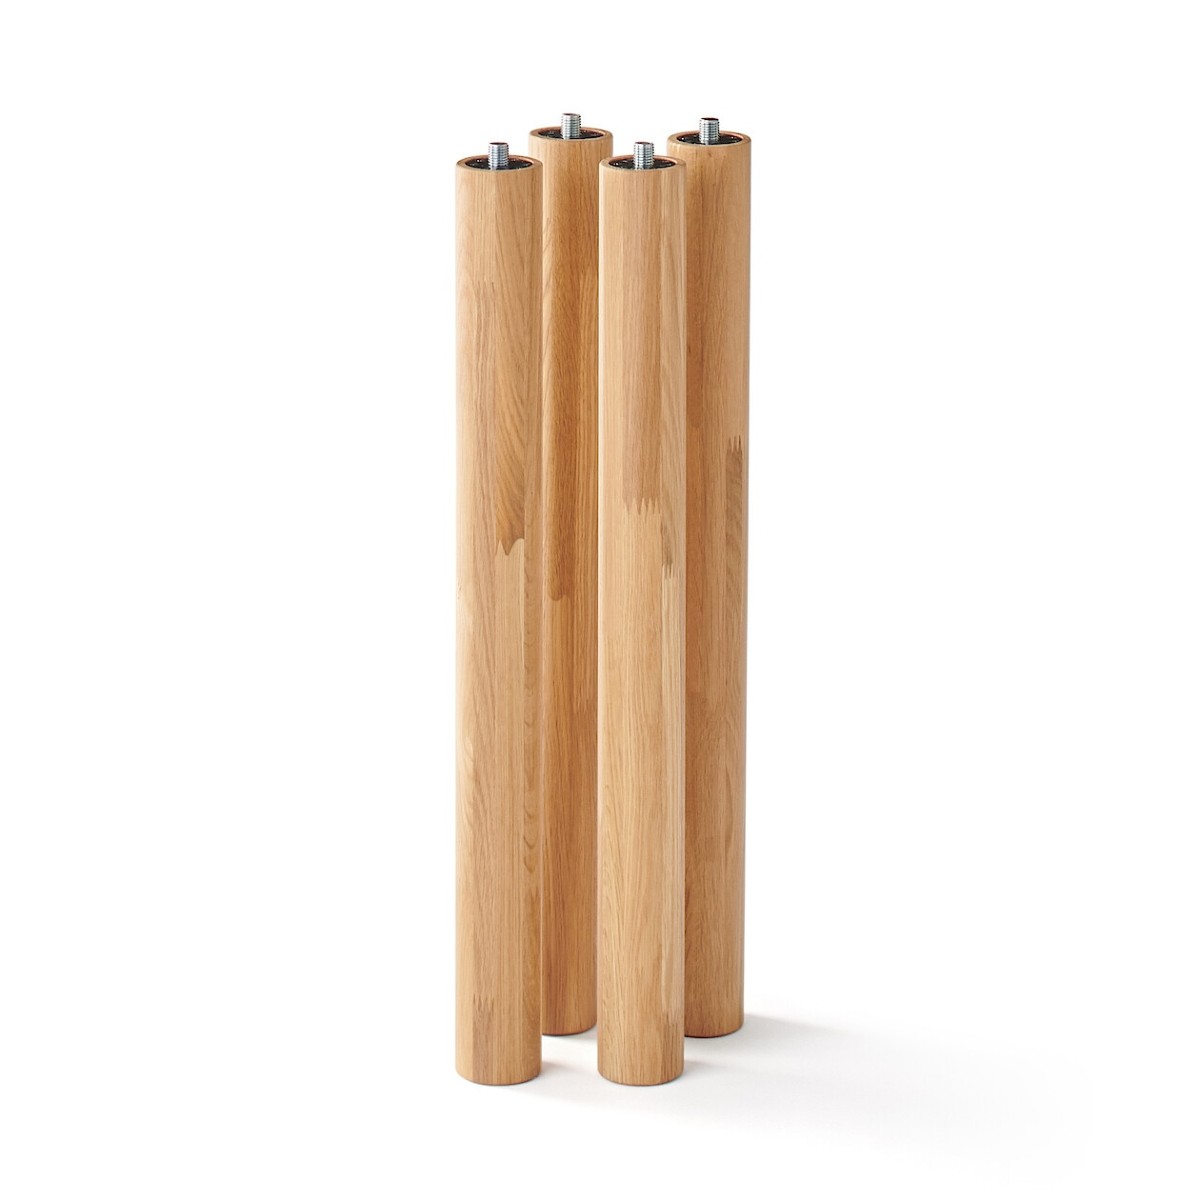 Chân bàn gỗ kiểu dáng tối giản kết hợp mối gắn kim loại